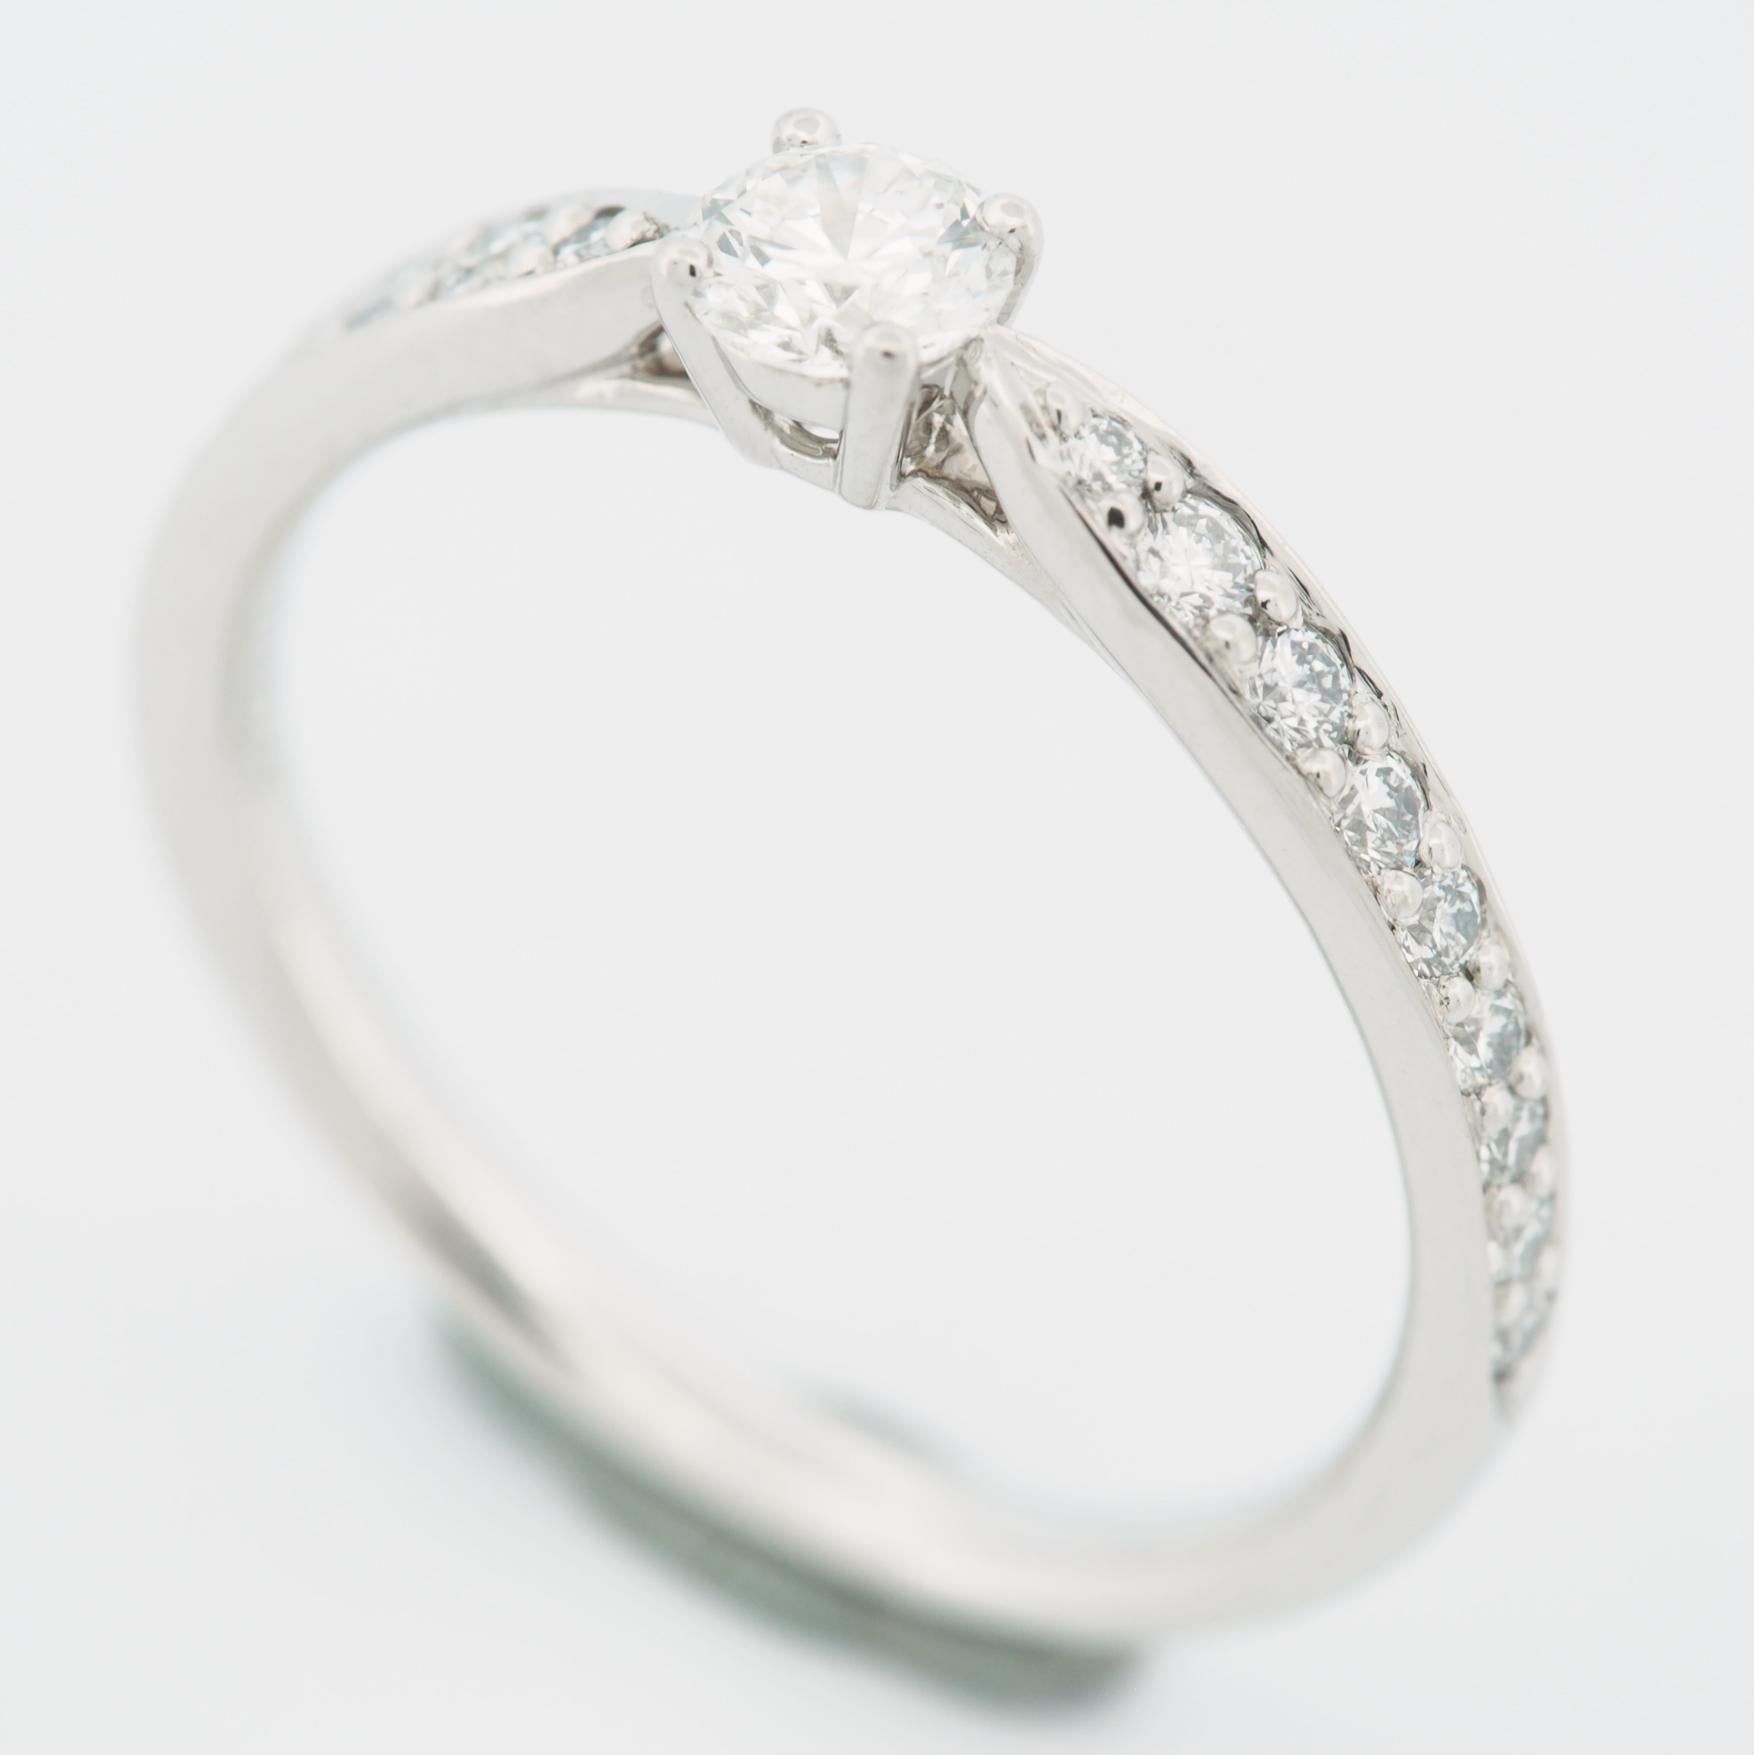 Article : Authentique bague à diamant solitaire Harmony de Tiffany 
Pierres : Diamant / 0,20ct (pierre centrale) avec 18 diamants pavés (approx. 0,11ct)
Couleur : F
Clarté:VS2
Polonais : Excellent
Symétrie : Excellent
Fluorescence : Aucune
Métal :